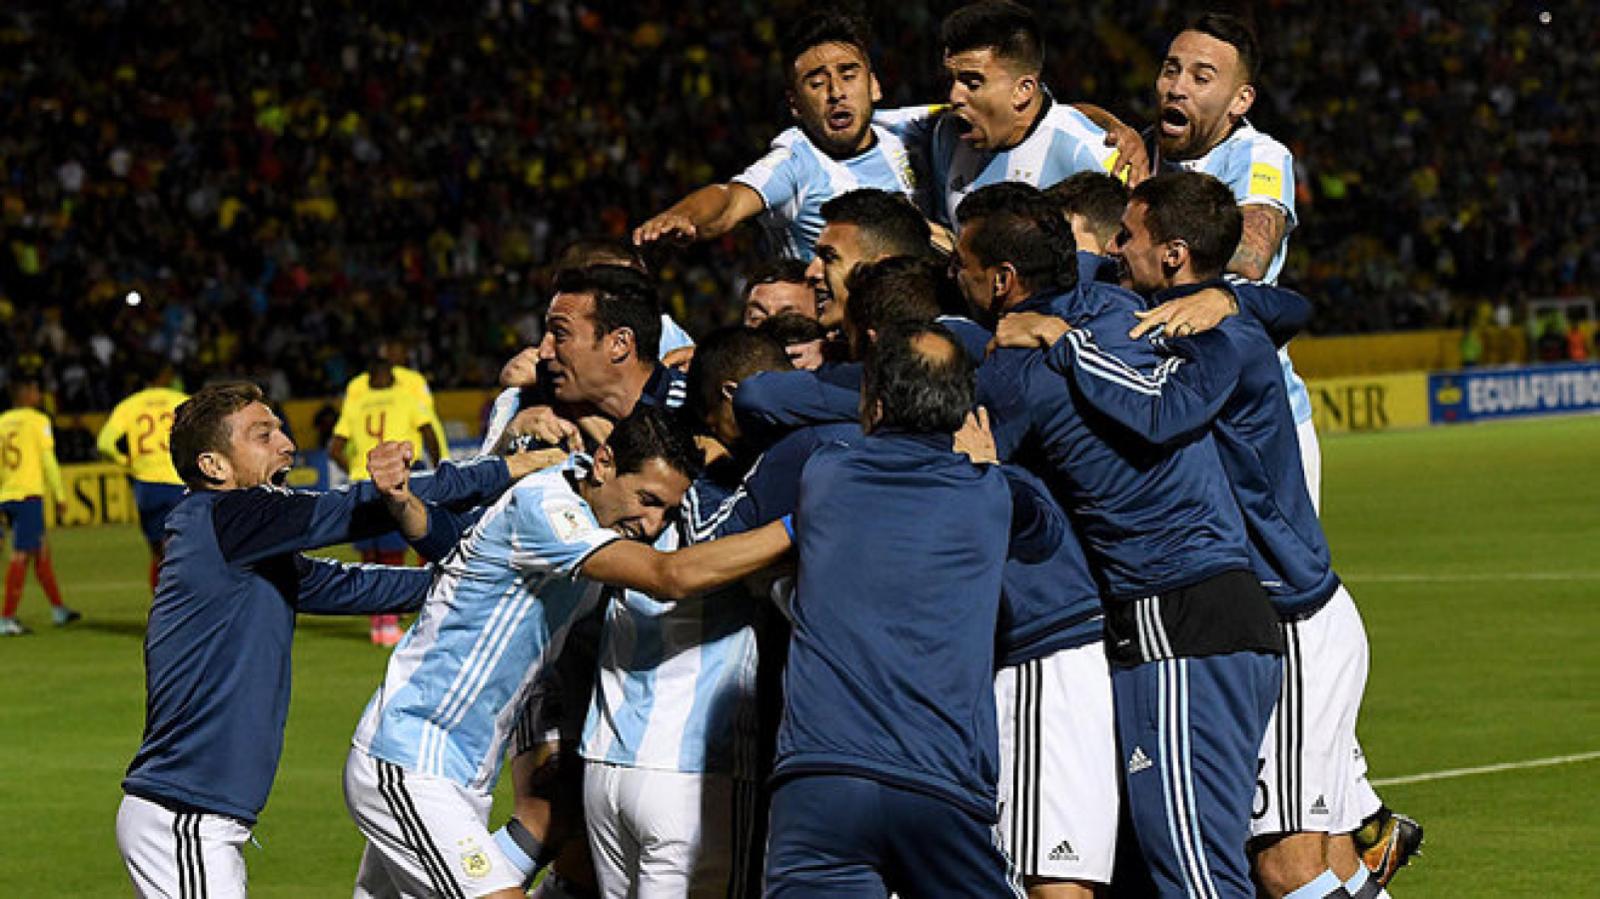 Imagen Actuación estelar de Messi contra Ecuador para ir a Rusia 2018. Scaloni, miembro del cuerpo técnico de Sampaoli, se suma a los festejos